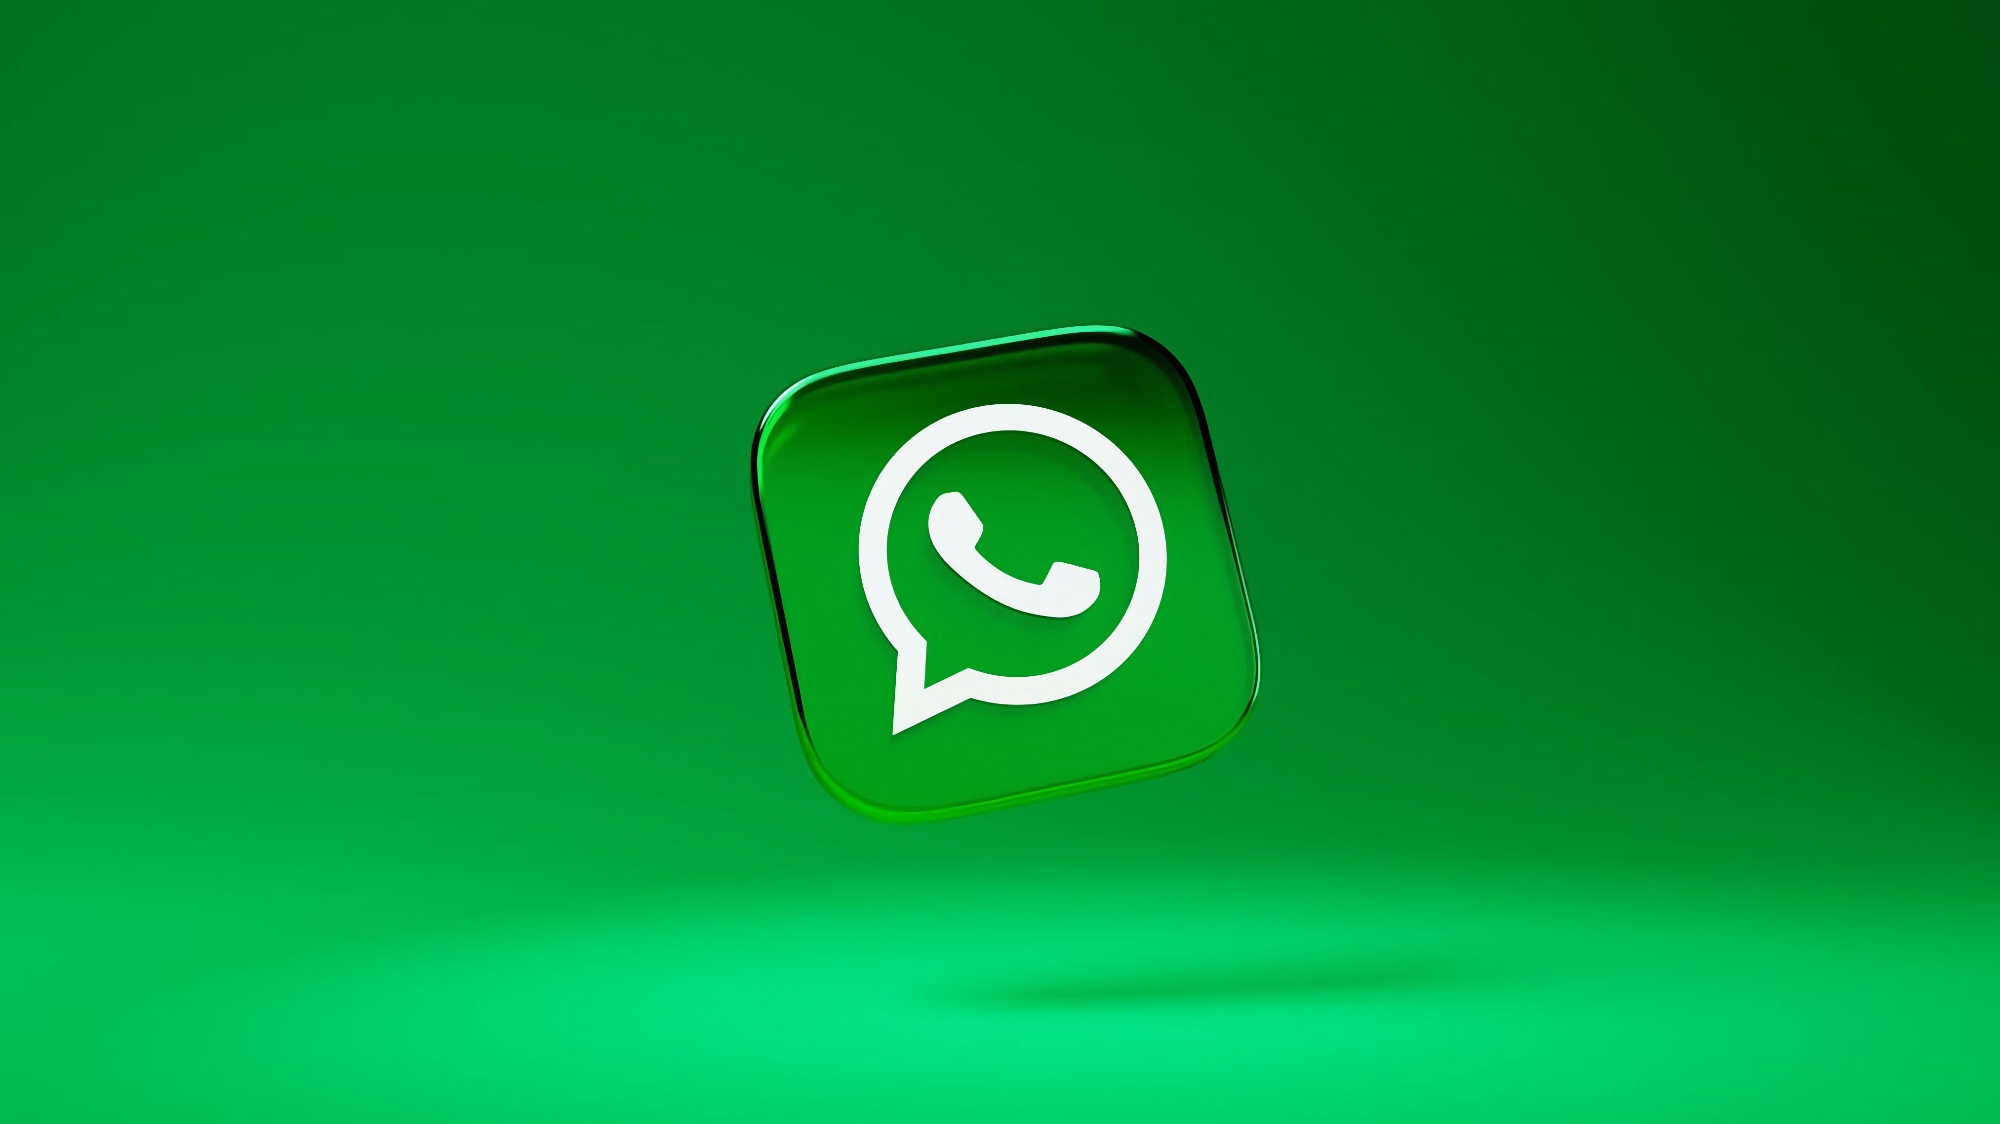 WhatsApp zaoferuje możliwość wysyłania zdjęć w wysokiej jakości